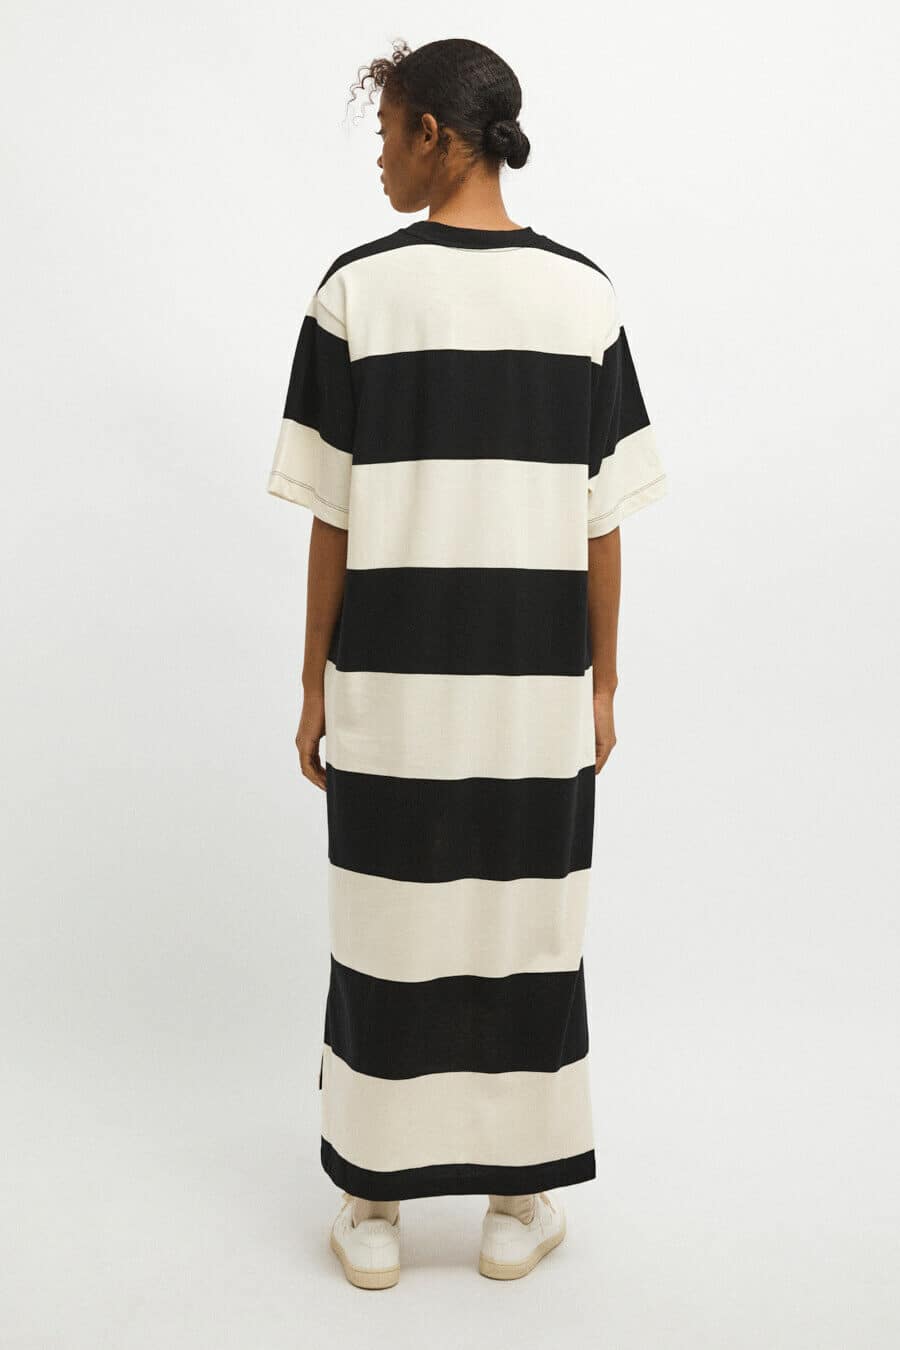 RITA ROW - Olimpia Dress - Black White Stripes 3